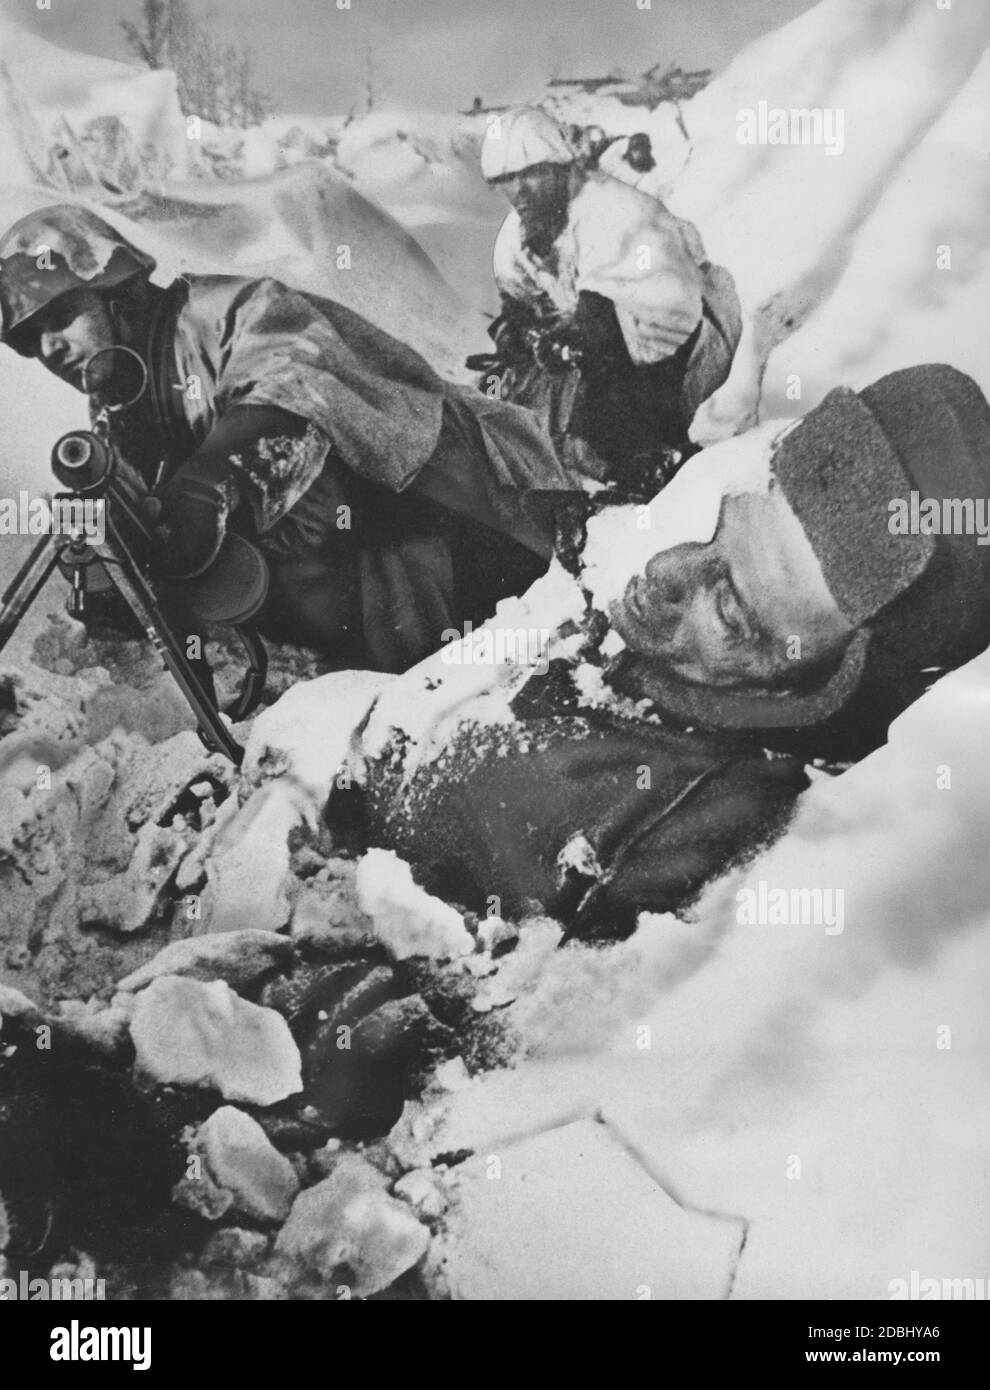 Soldati con una mitragliatrice MG 34 dietro un soldato caduto dell'Esercito Rosso in una trincea nella zona di Stalingrado. Foto Stock